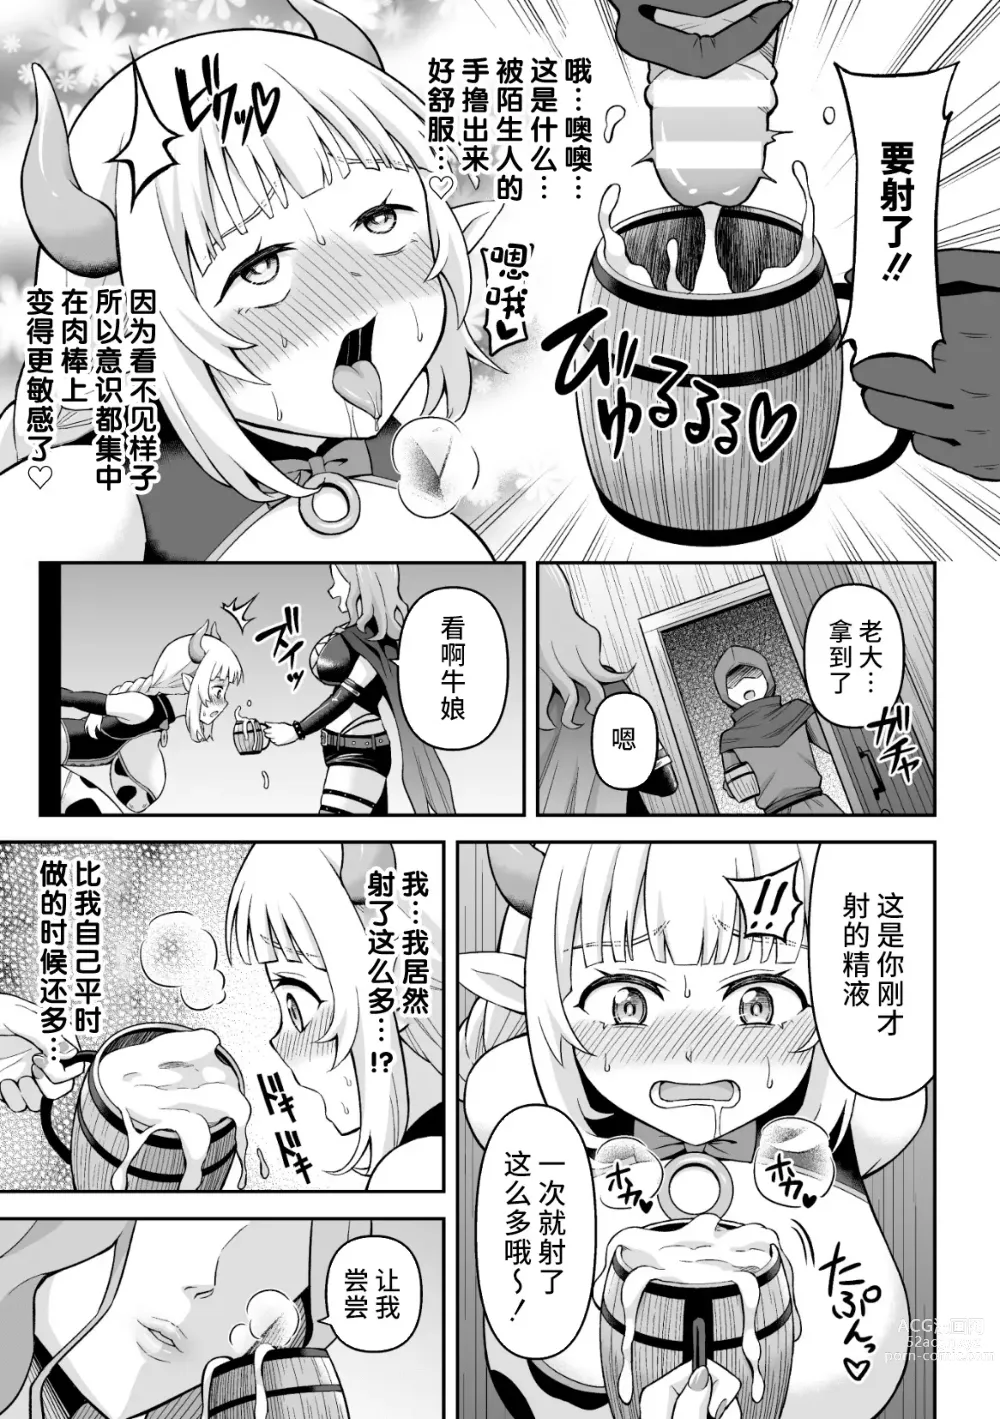 Page 9 of manga Ushi Musume no Kyousei Oschinpo Milk